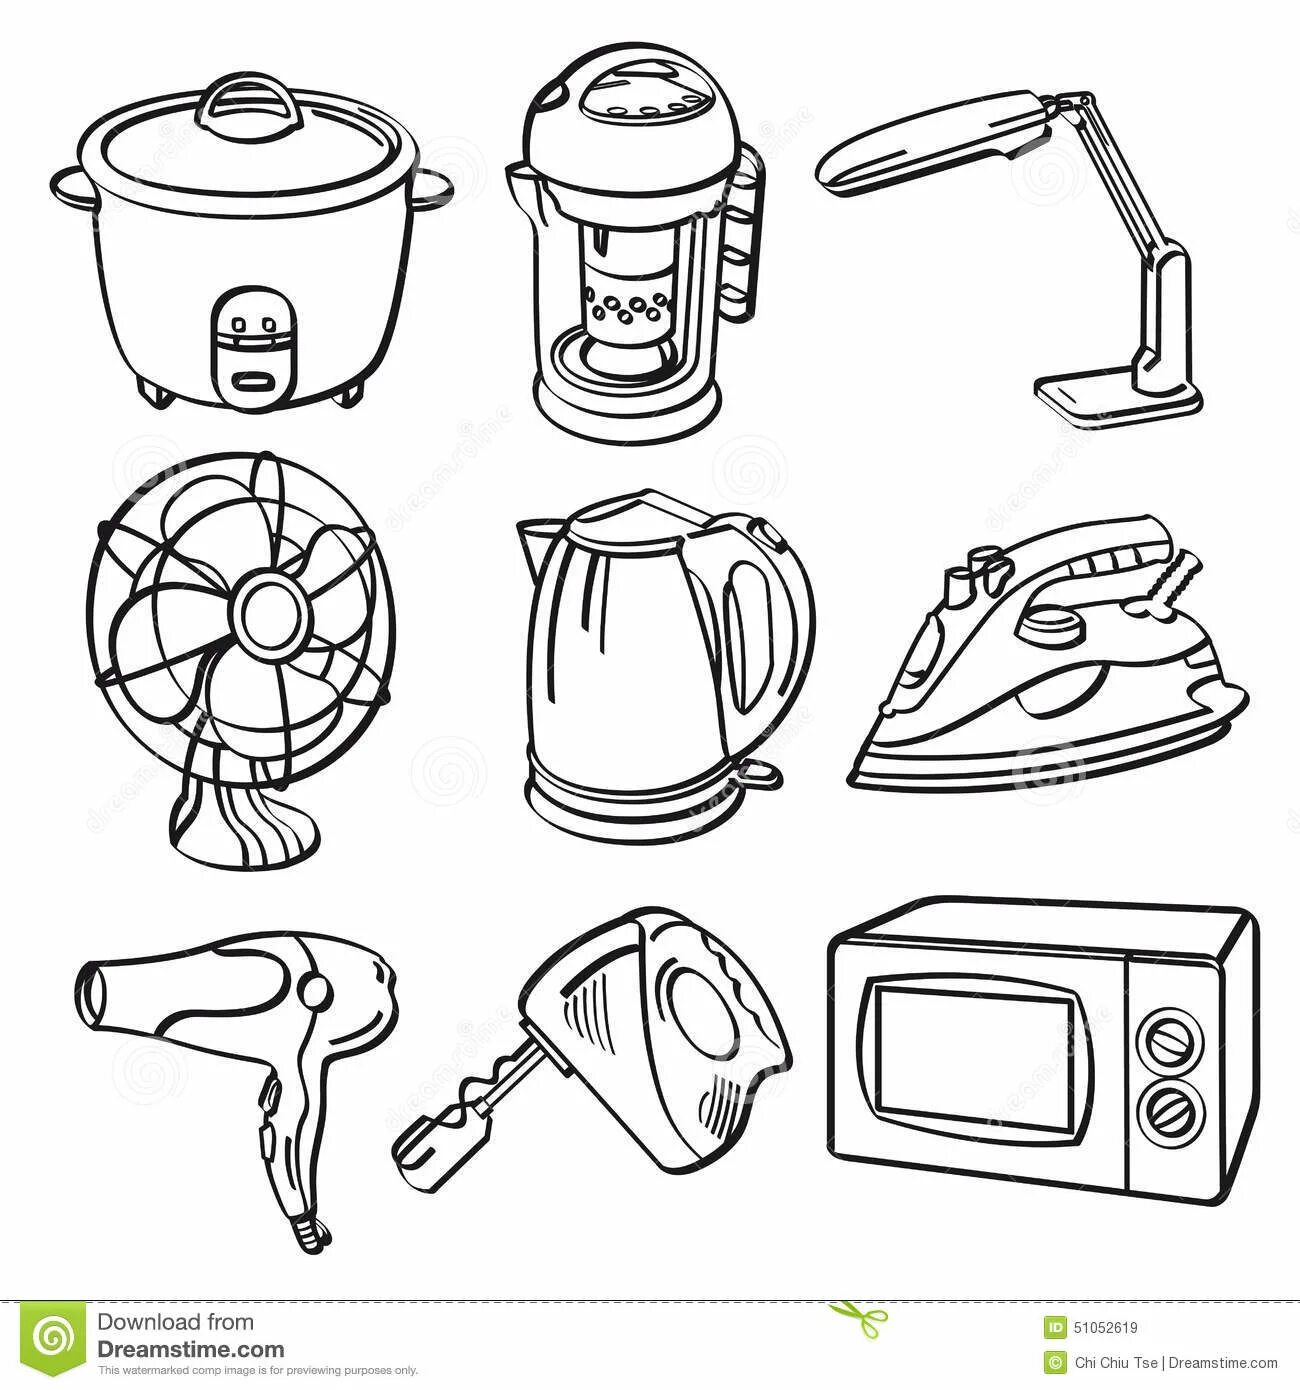 Household appliances for kindergarten #18